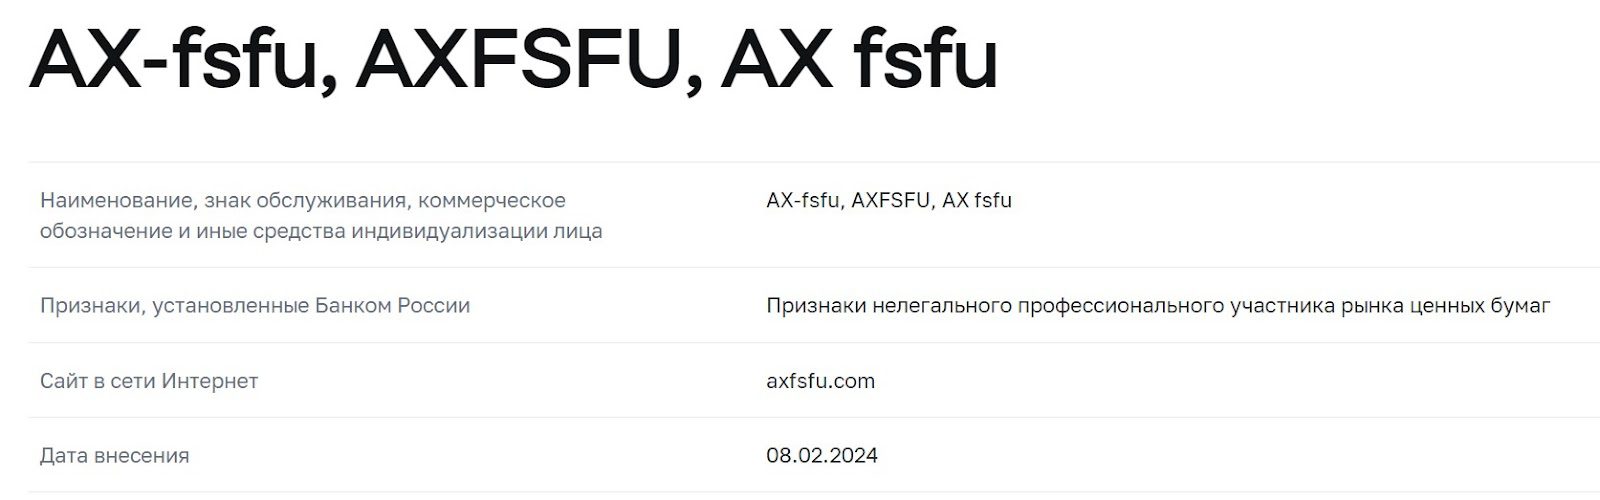 ax fsfu